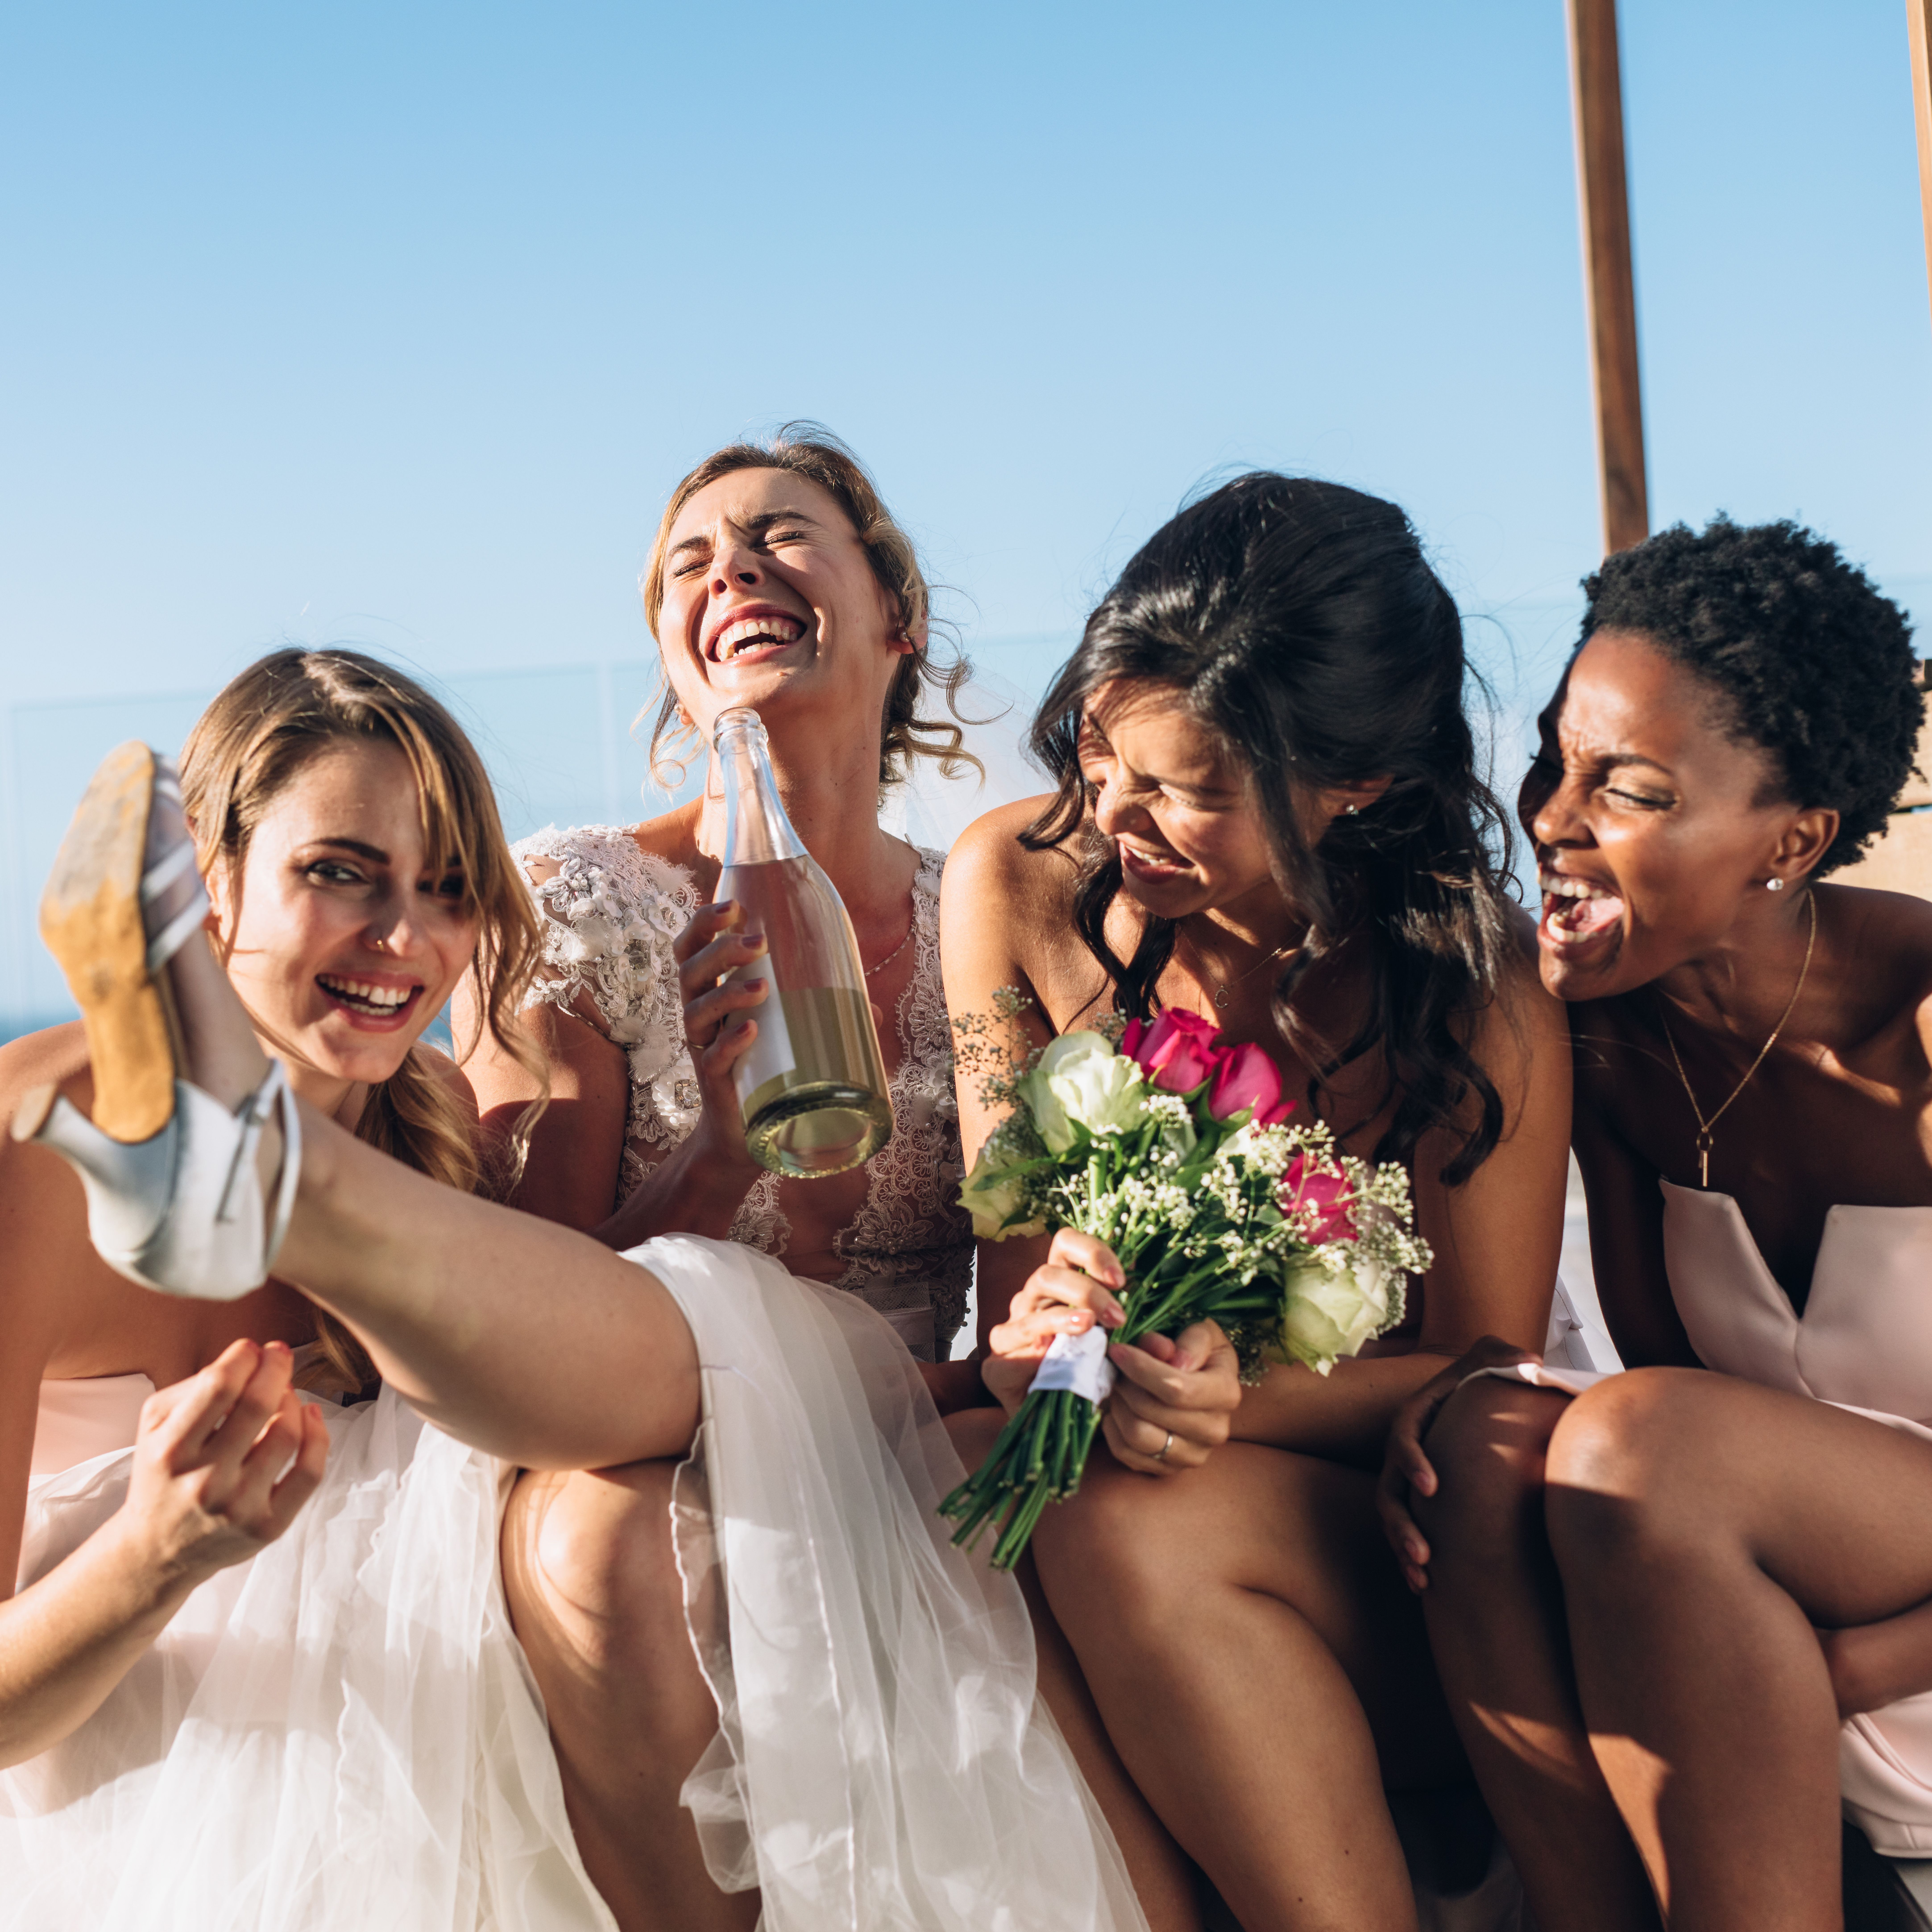 Brautjungfern ziehen eine Braut dazu an, einen umgekehrten Gangbang mit einem Trauzeugen zu haben